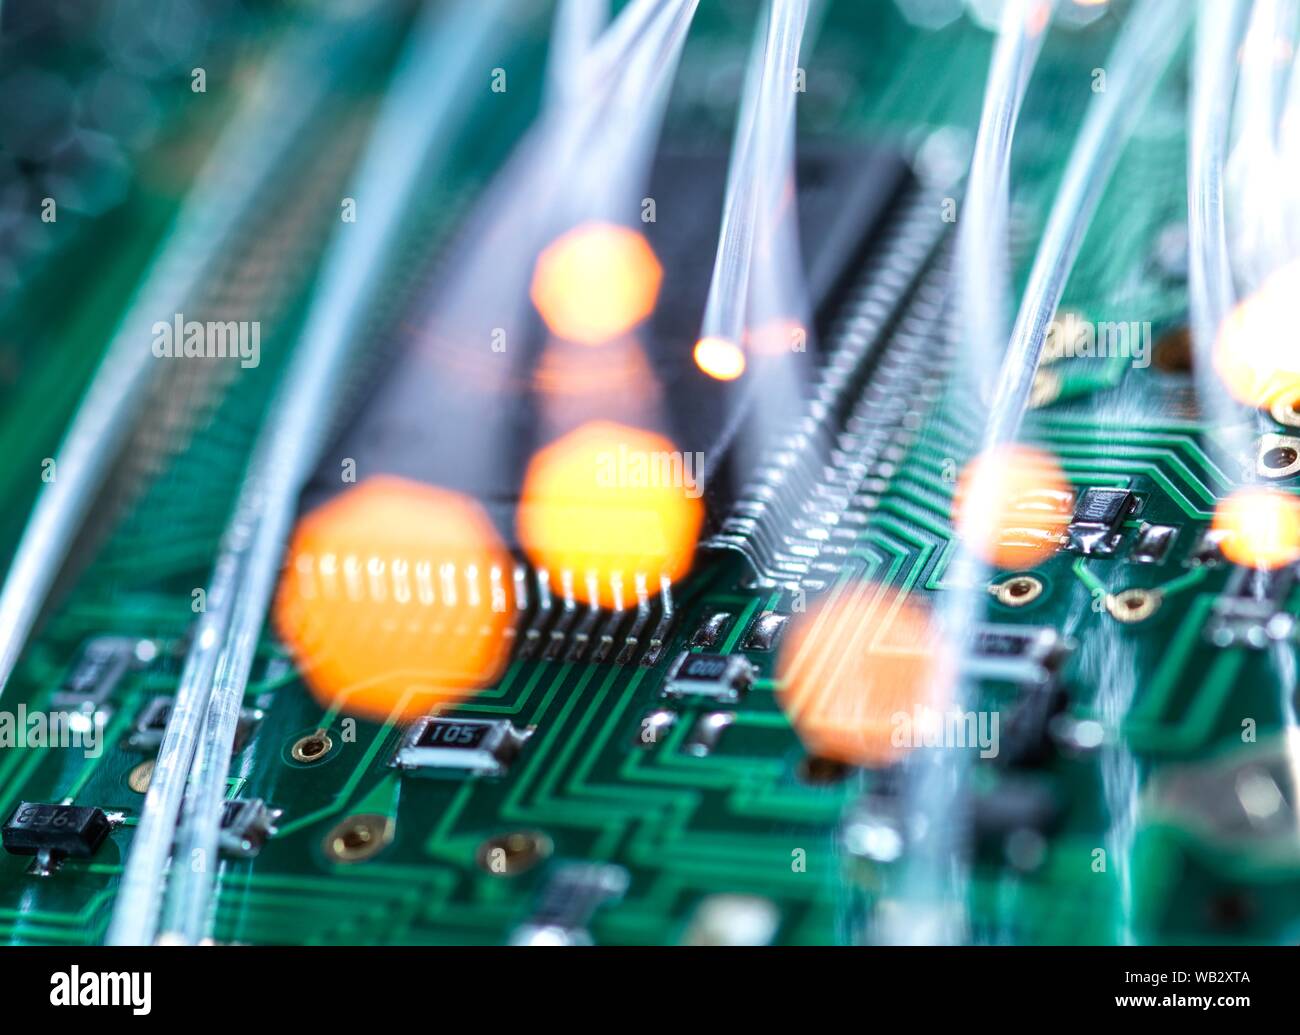 Communication numérique, conceptual image. La fibre optique acheminant des données sur les circuits électroniques d'un ordinateur portable. Banque D'Images